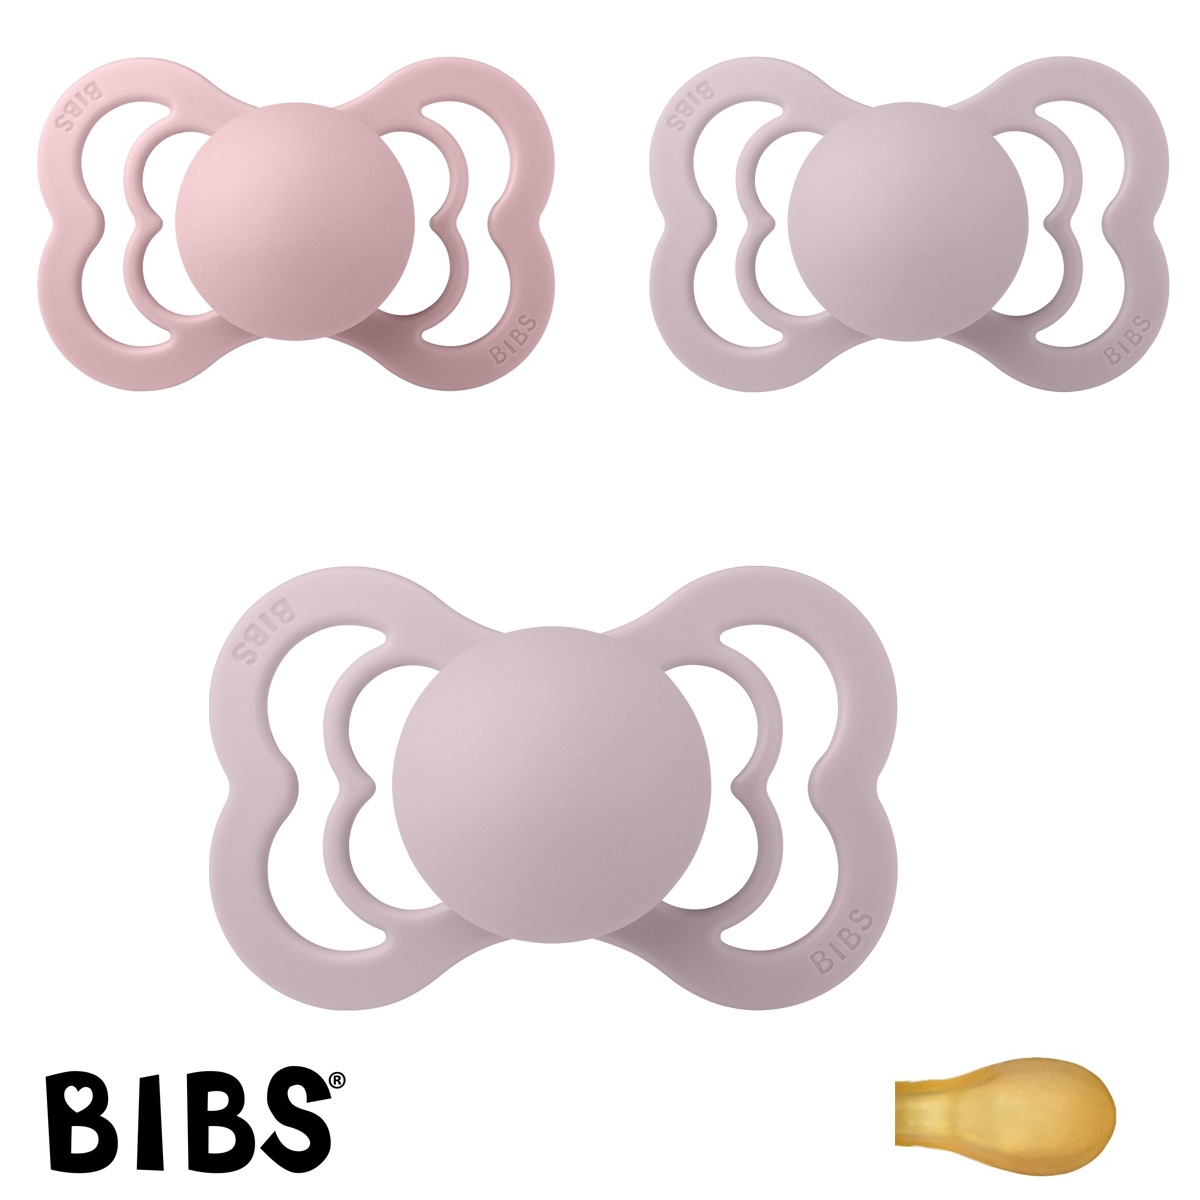 BIBS Supreme Sutter med navn, 2 Dusky Lilac, 1 Pink Plum, Symmetrisk Latex str.2 Pakke med 3 sutter